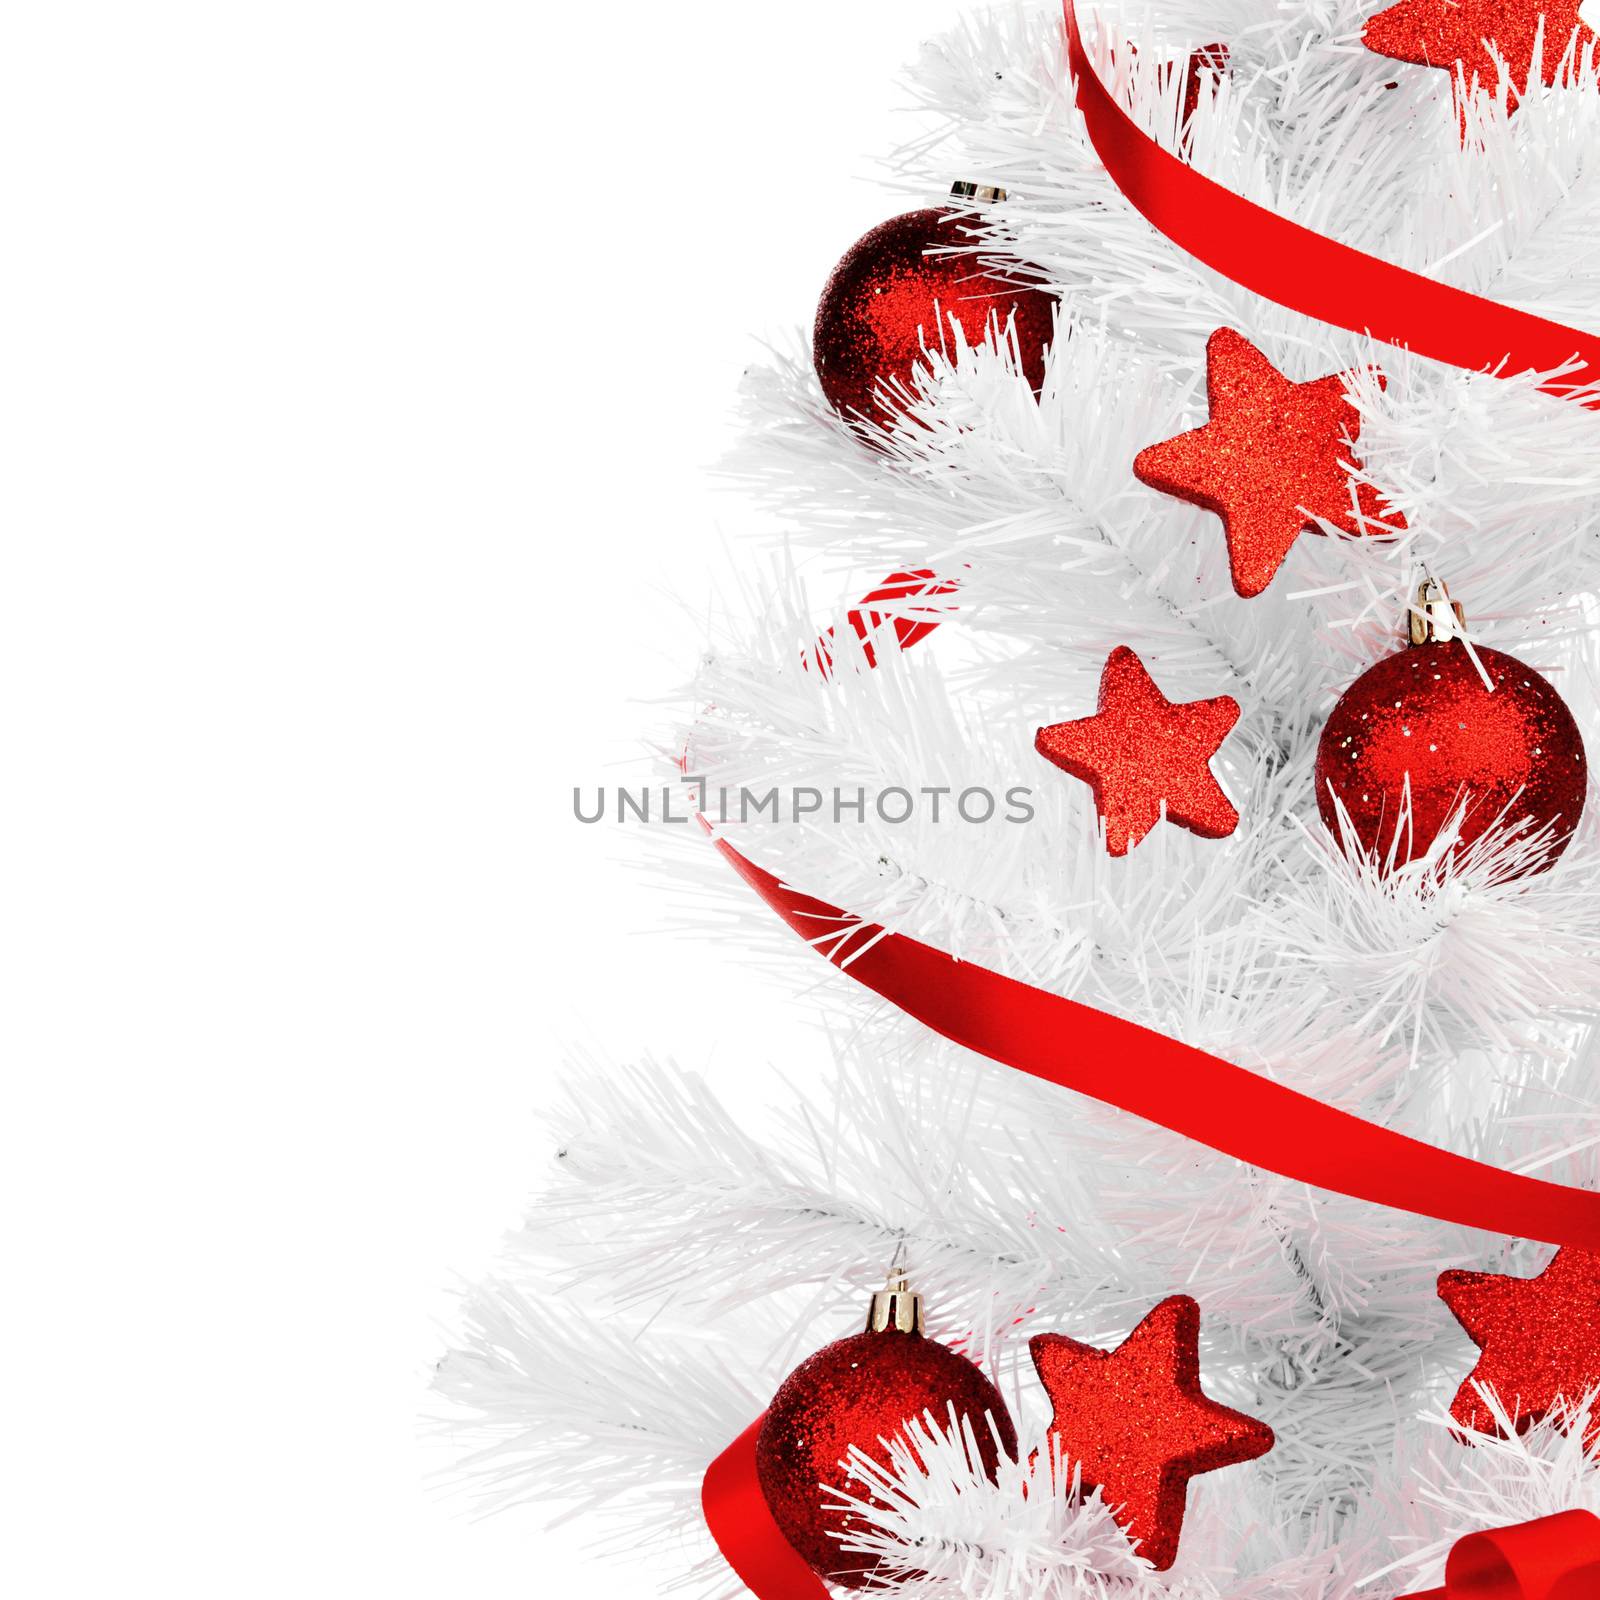 Christmas tree by Yellowj